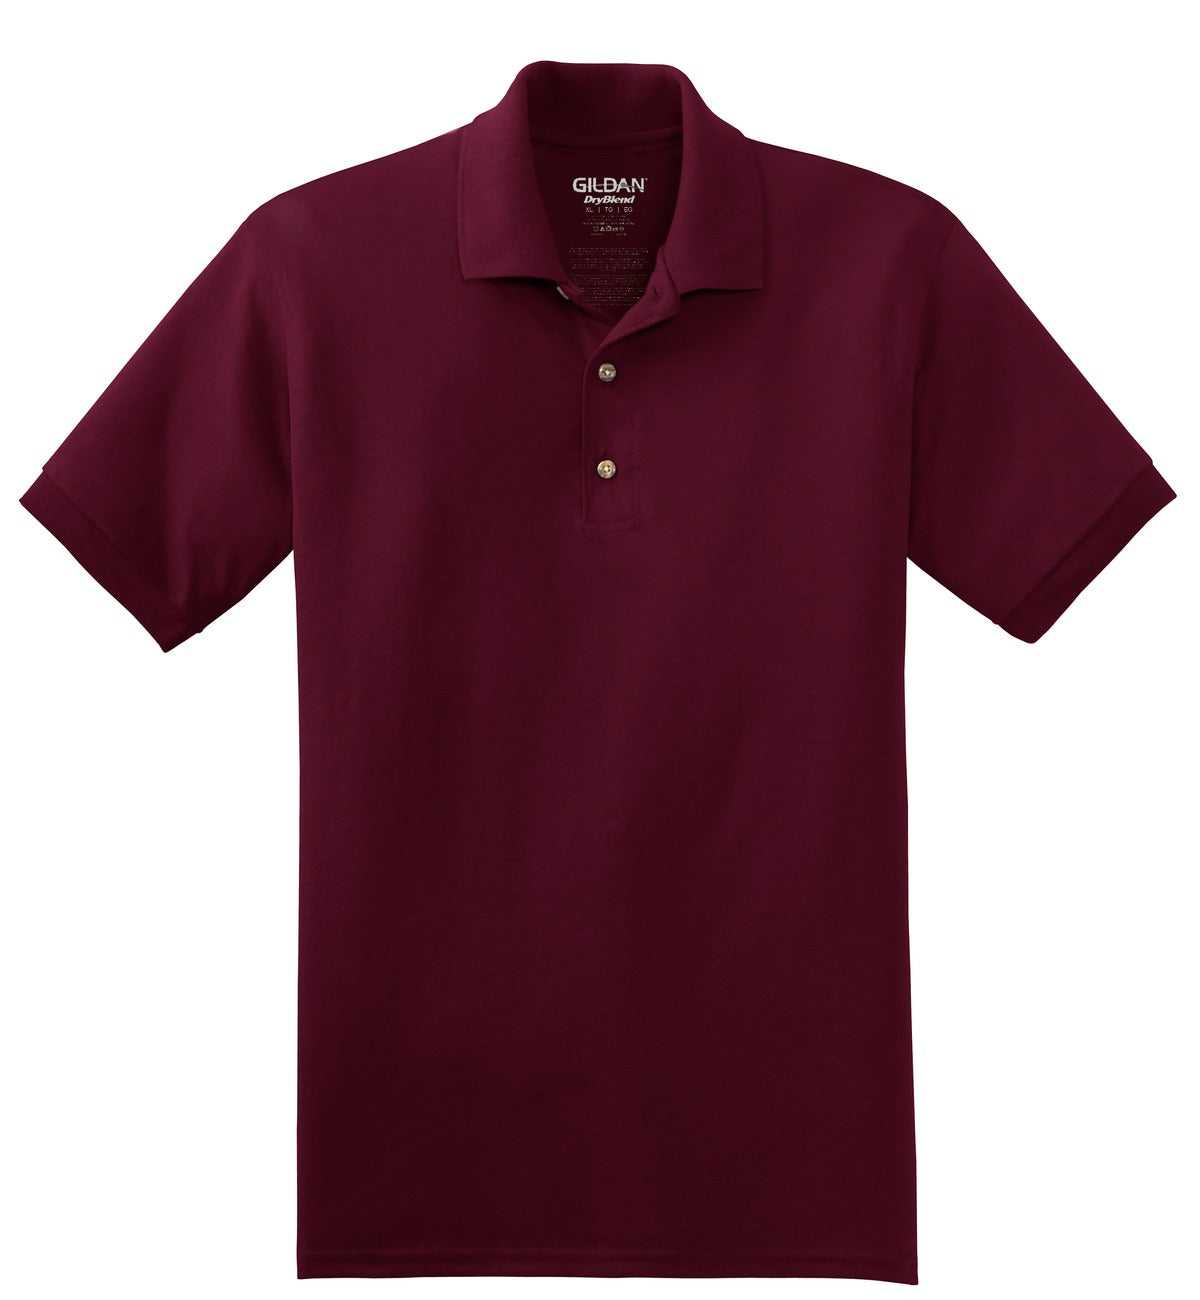 Gildan 8800 Dryblend 6-Ounce Jersey Knit Sport Shirt - Maroon - HIT a Double